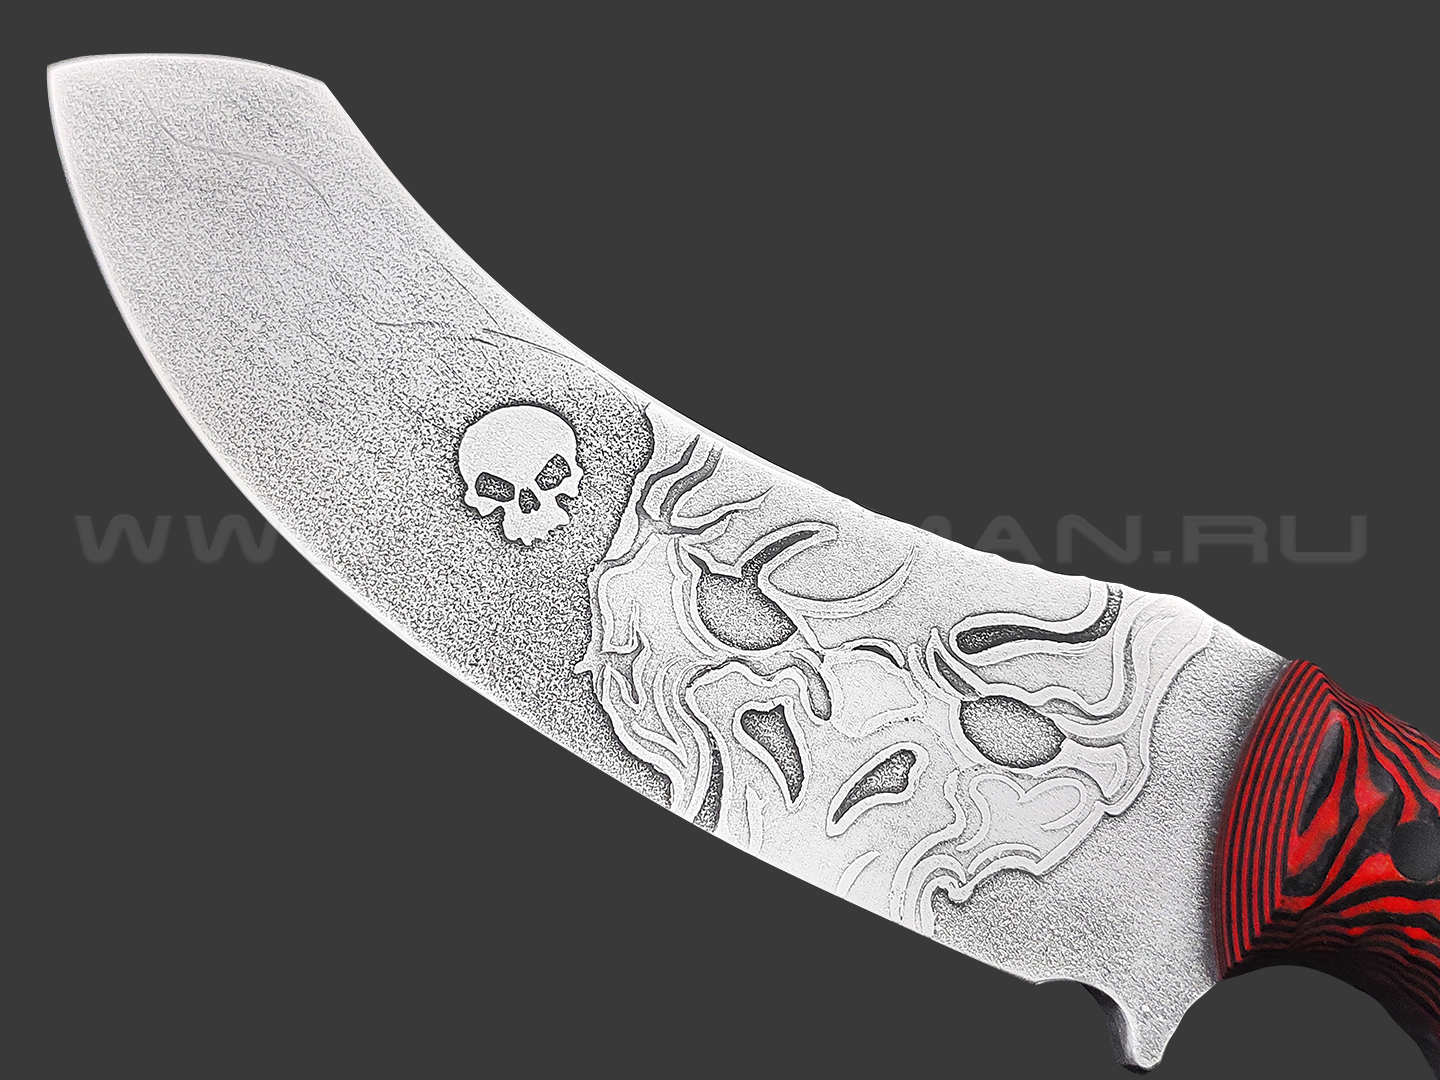 Волчий Век нож Кондрат 12 Custom Orc Edition сталь 95Х18 WA травление, рукоять G10 black & red